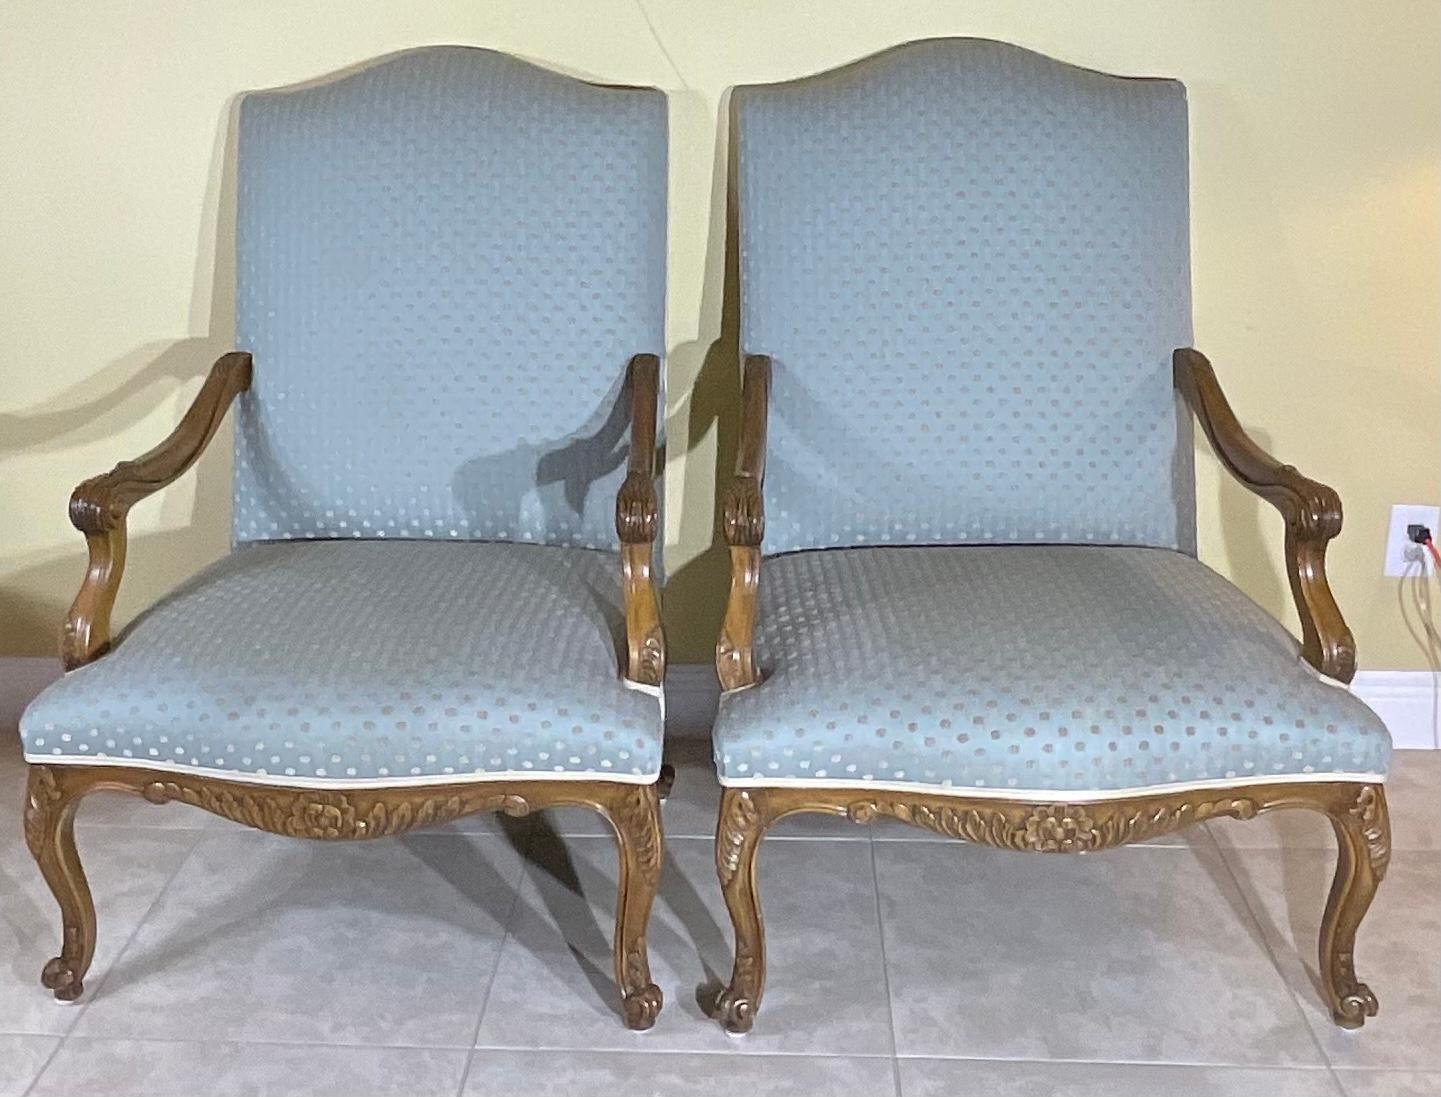 Gorgeous Paar handgeschnitzte Sessel, Qualität aktualisiert Polsterung. Veloursähnlicher Rücken und Besatz, klassisch  Eleganz im französischen Stil. Der Stuhl schön fest gepolstert und bequem Der Innensitz misst: 25 